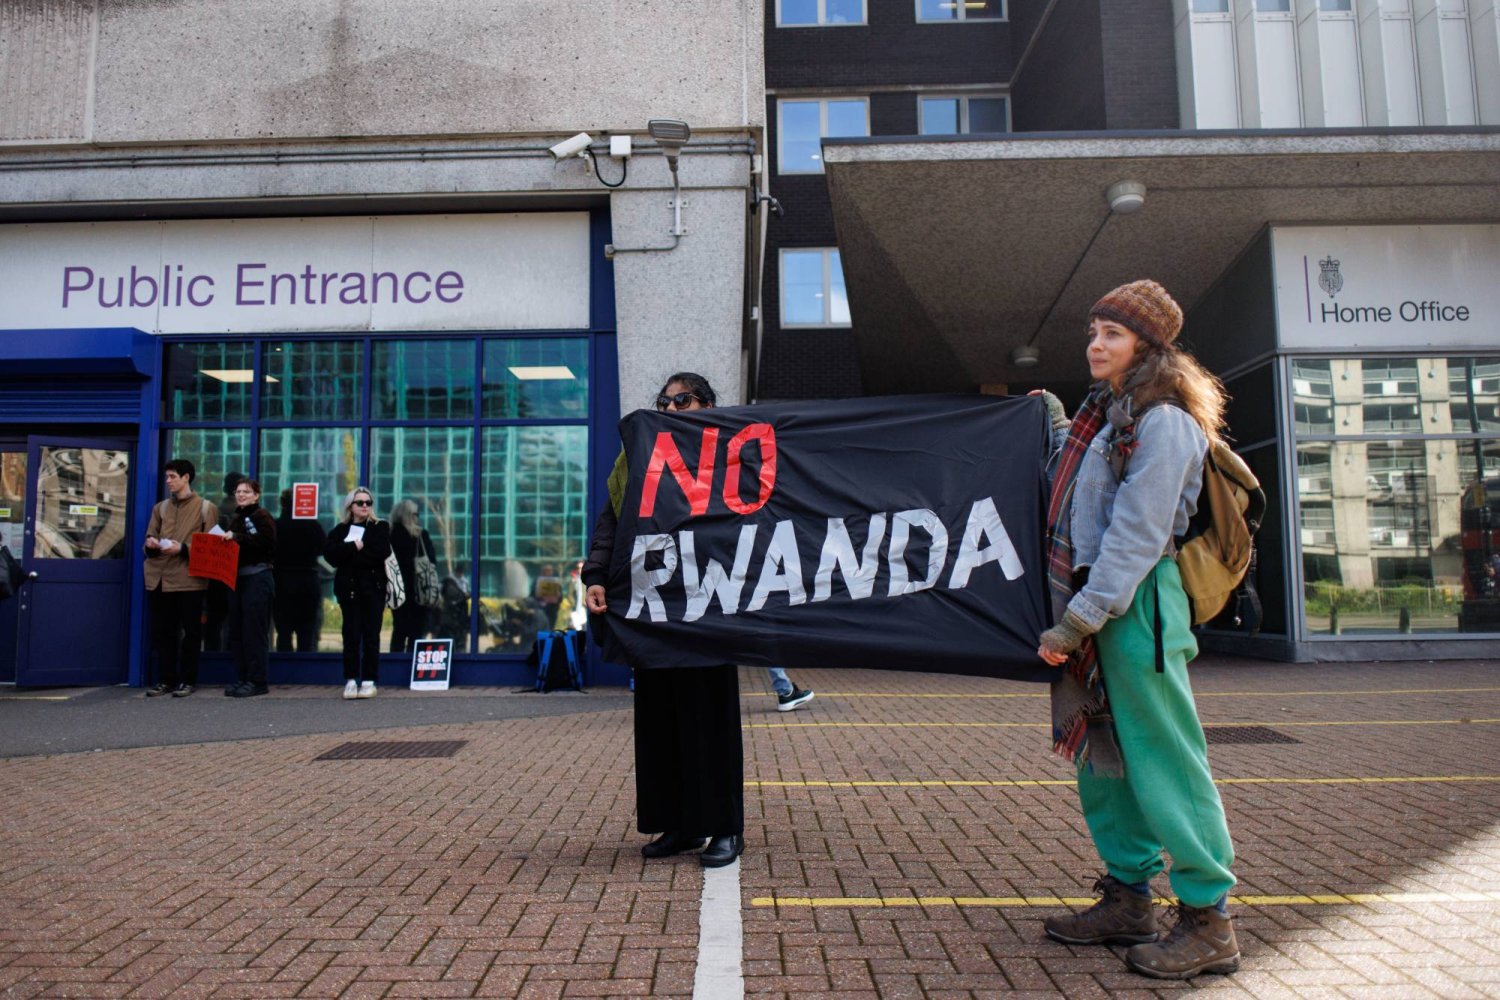 ناشطون يحتجون على قانون الترحيل إلى رواندا الذي اعتمدته الحكومة البريطانية خارج مركز الهجرة جنوب لندن (إ.ب.أ)